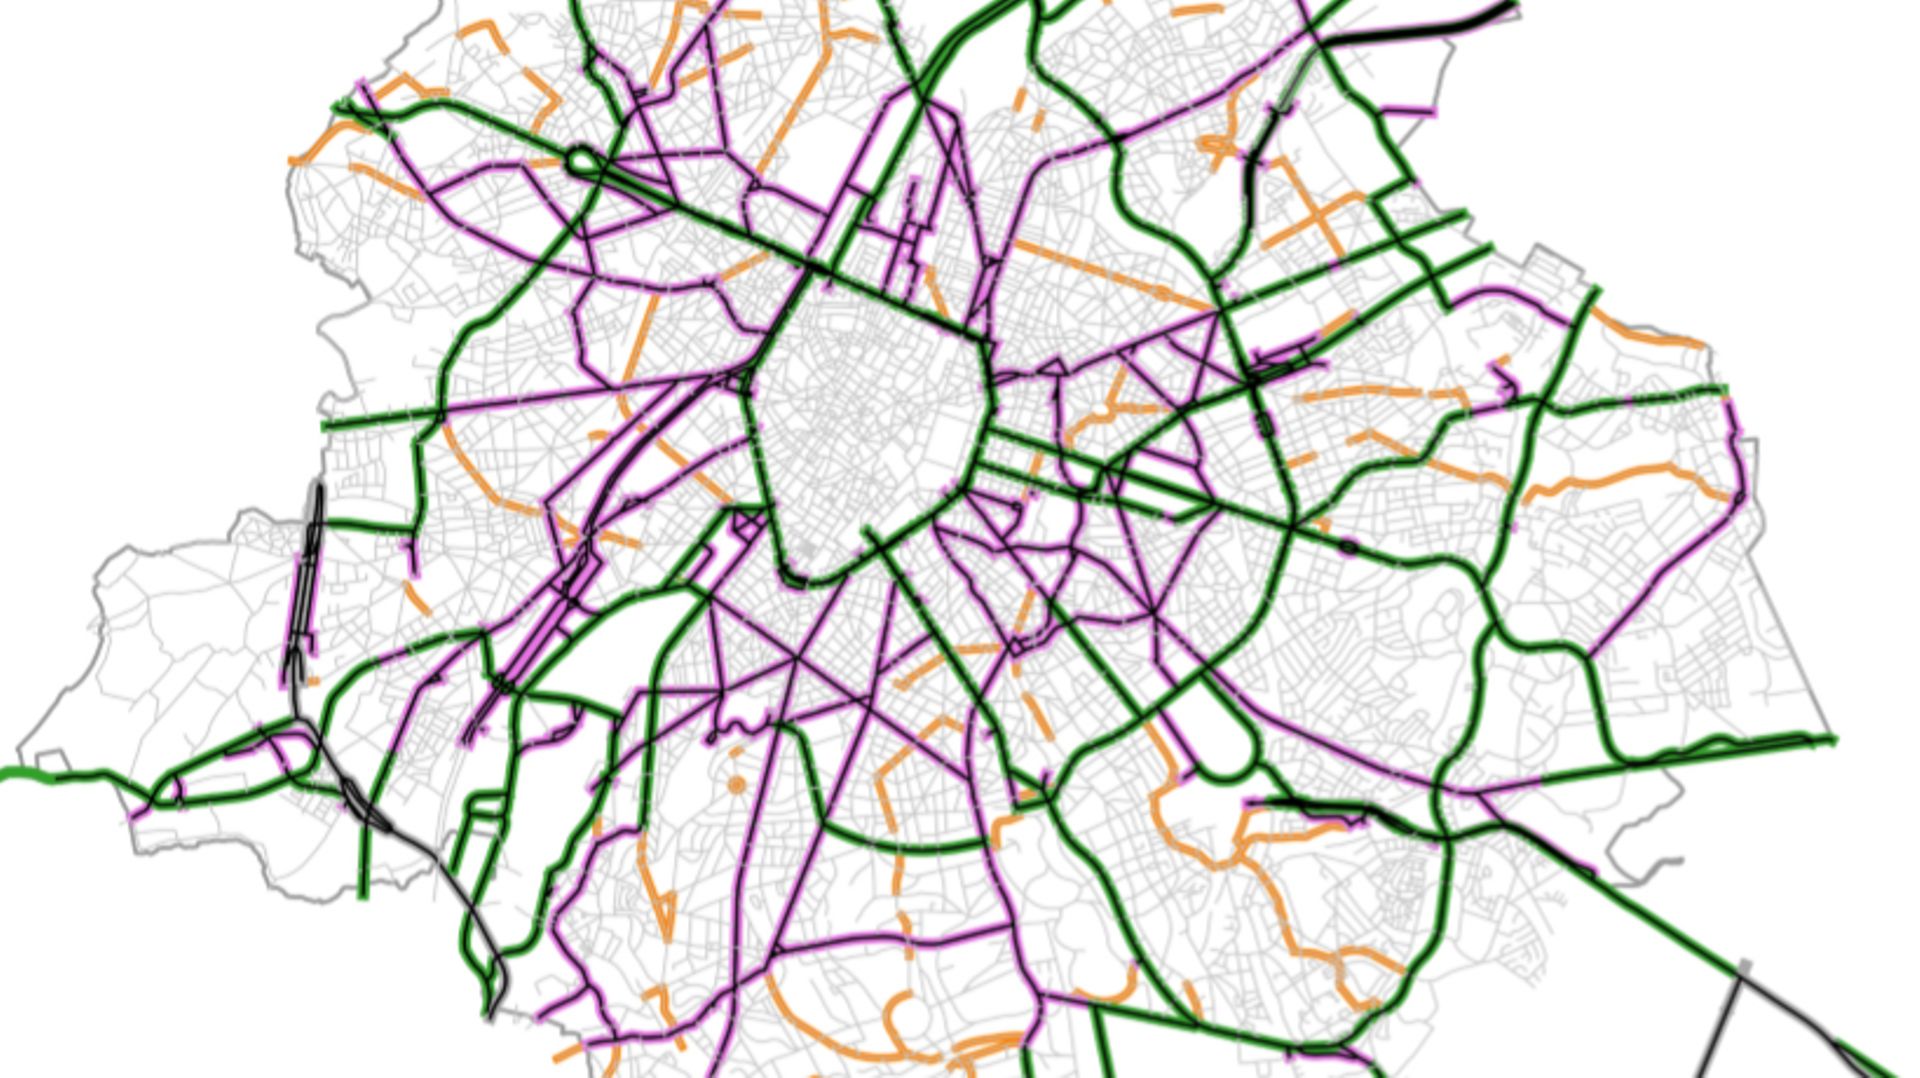 La carte de Bruxelles mobilité sur la régionalisation de la zone 30 
En mauve: le régime de vitesse général : 30 km/h
En vert: régime de vitesse d'exception: 50 km/h et 70 km/h pour quelques entrées de ville 
En orange: régime de vitesse à discuter avec l